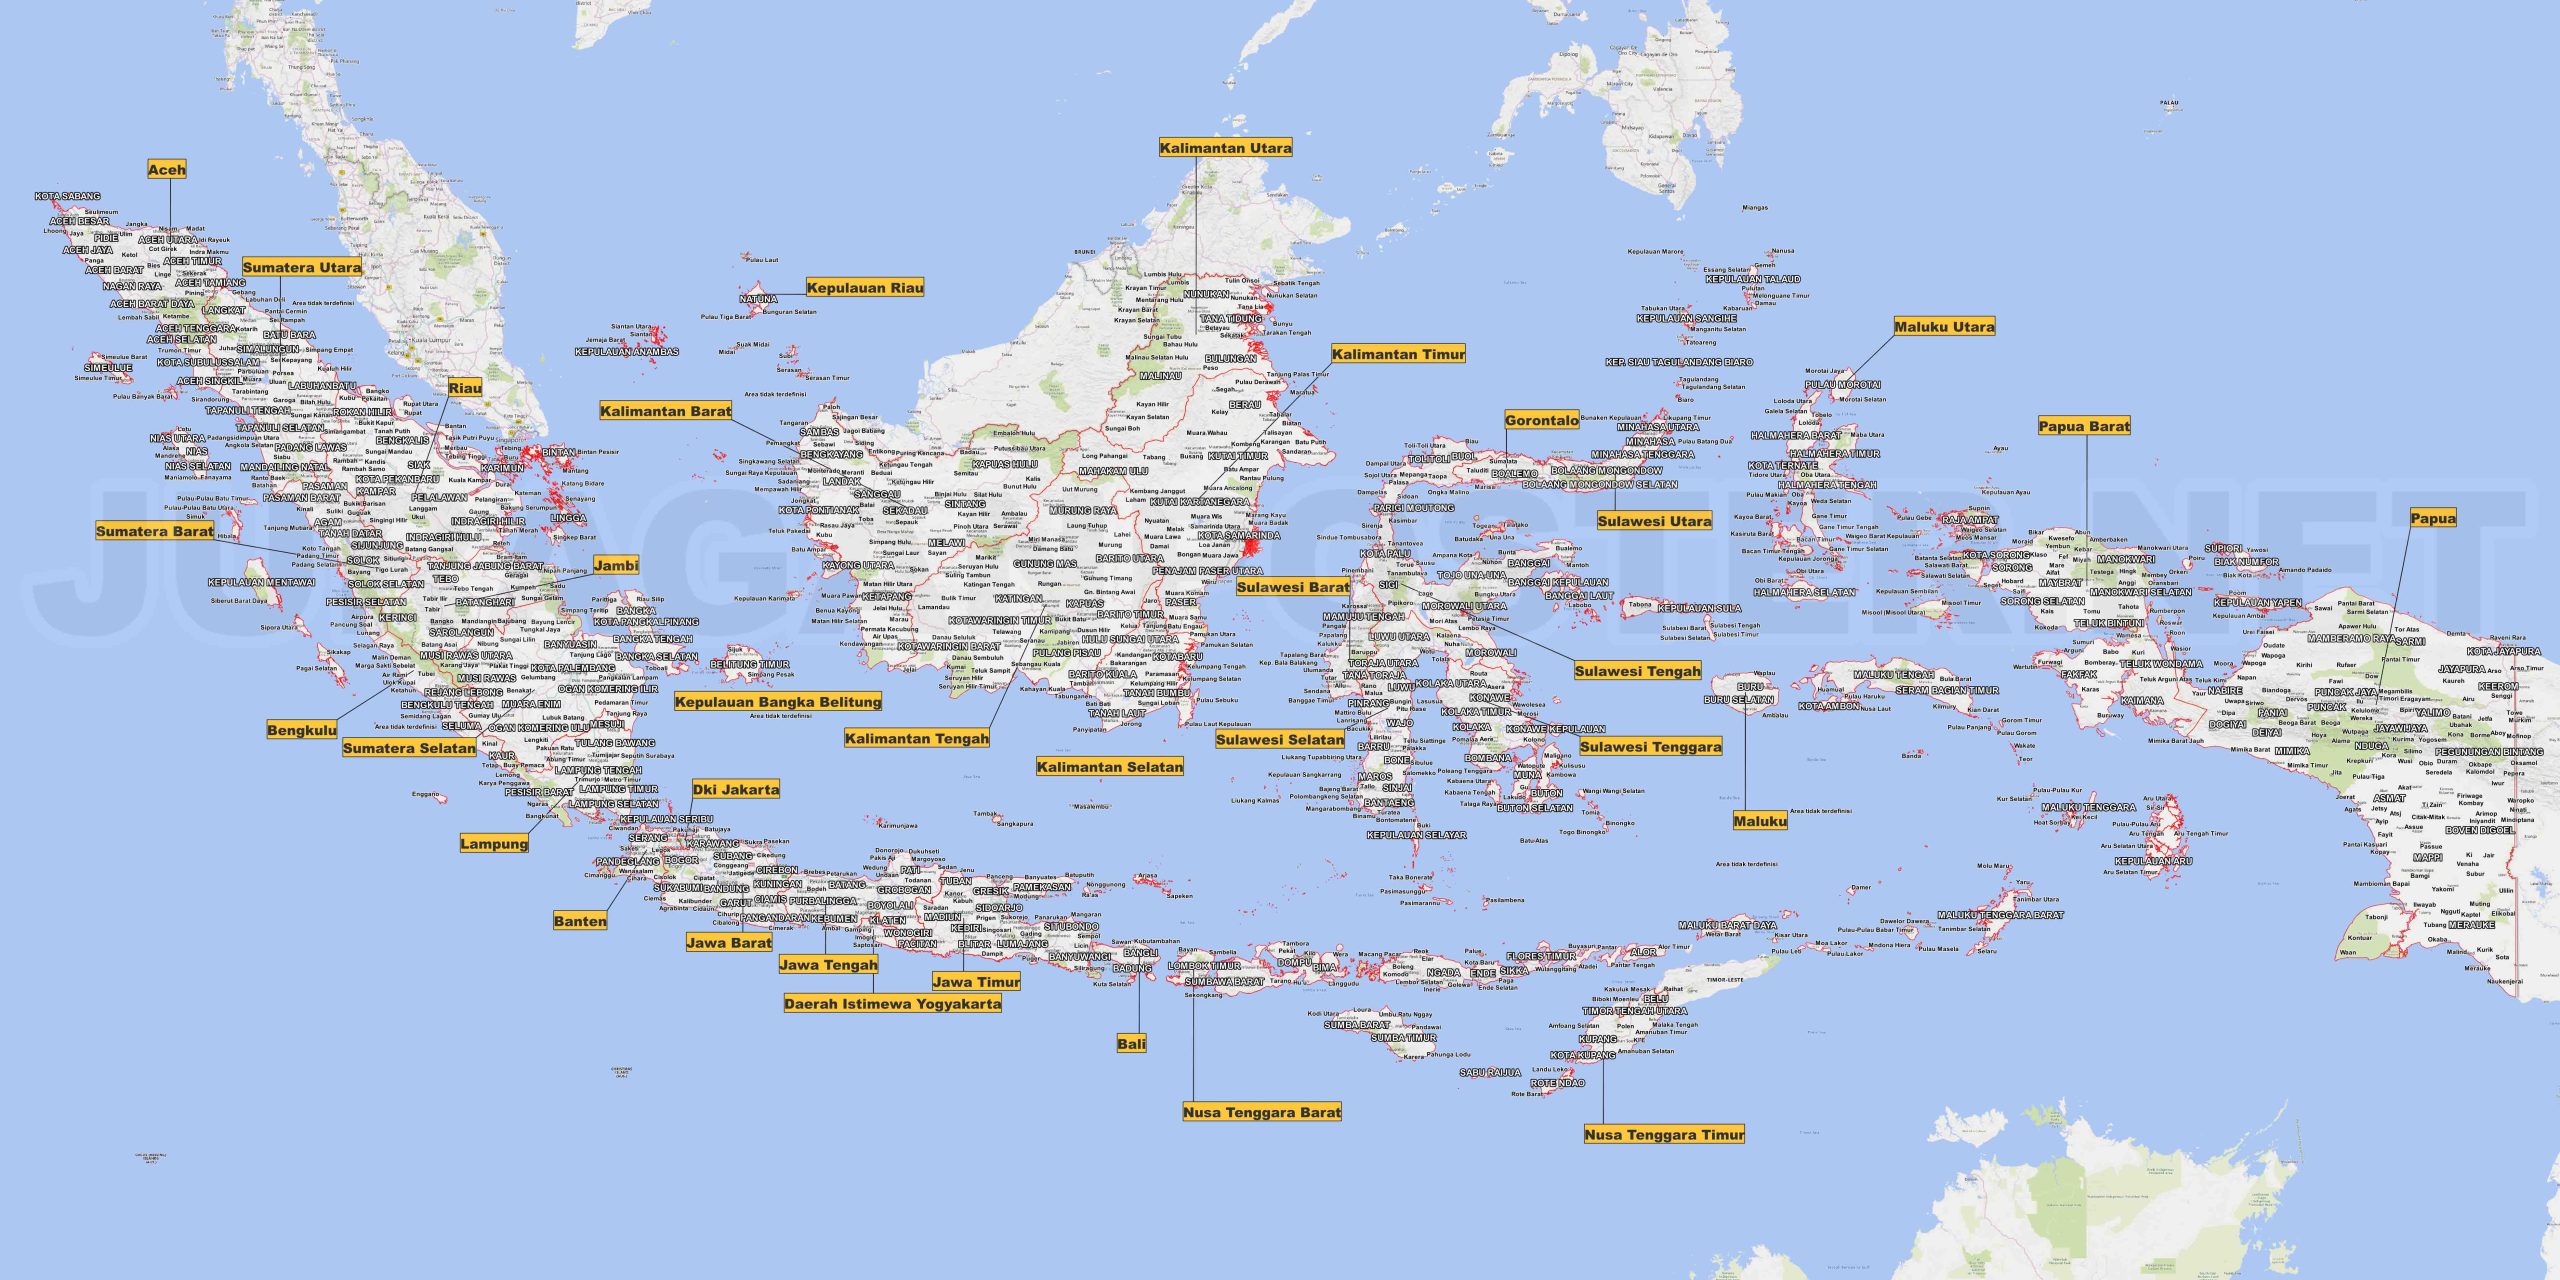 Lengkap Peta Indonesia: Informasi Komprehensif tentang Nusantara